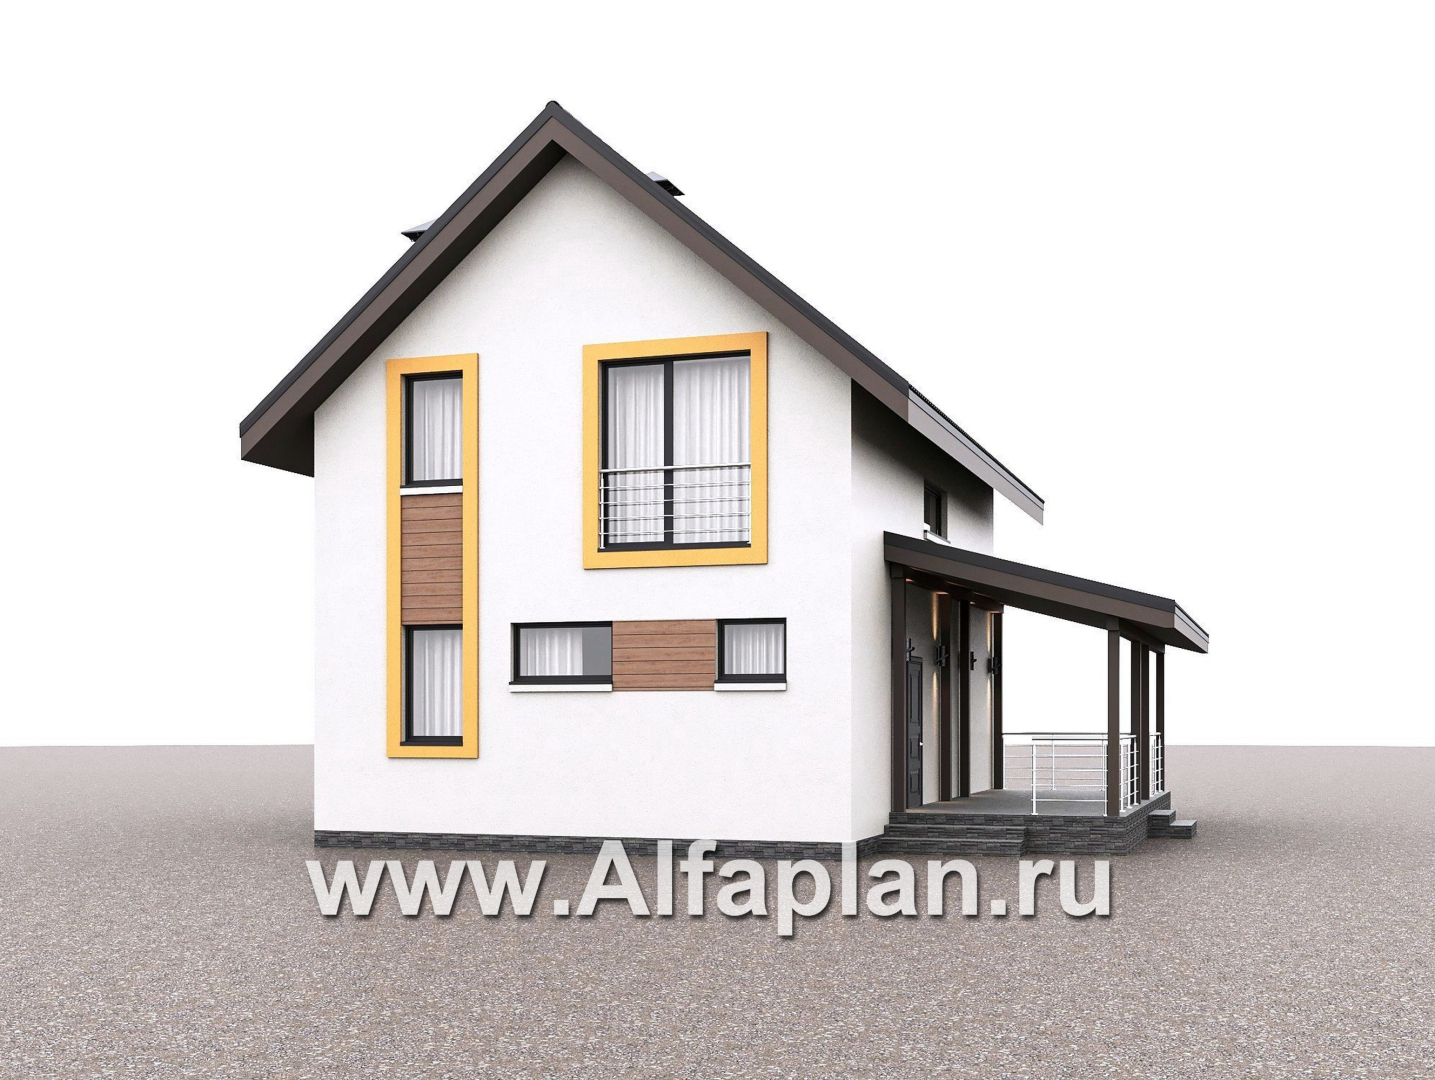 Проекты домов Альфаплан - "Викинг" - проект дома, 2 этажа, с сауной и с террасой сбоку, в скандинавском стиле - дополнительное изображение №2